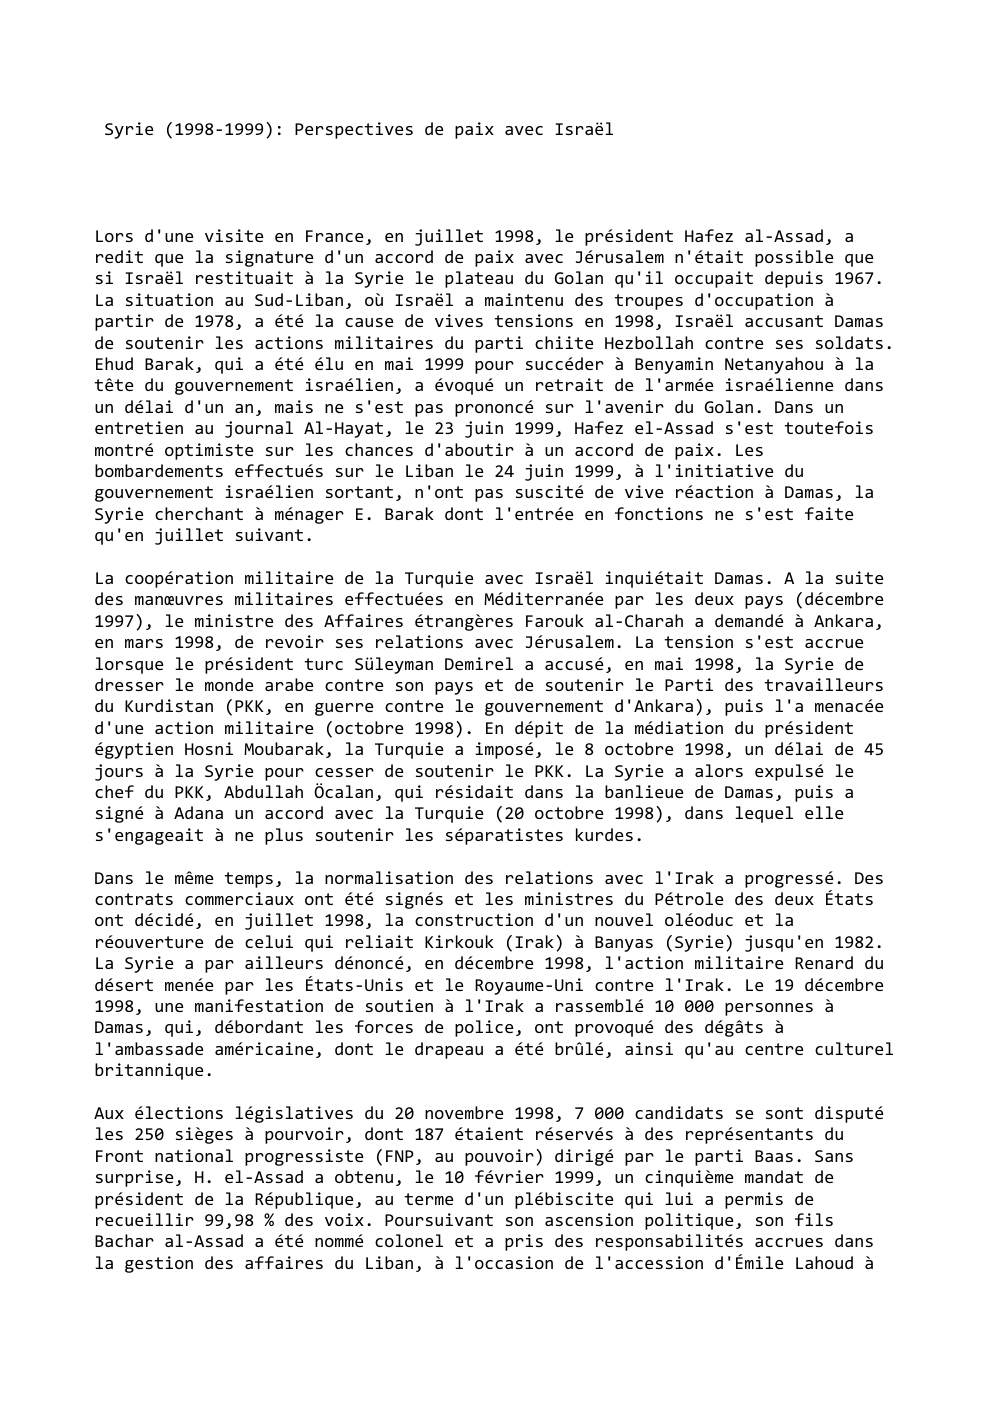 Prévisualisation du document Syrie (1998-1999): Perspectives de paix avec Israël

Lors d'une visite en France, en juillet 1998, le président Hafez al-Assad, a...